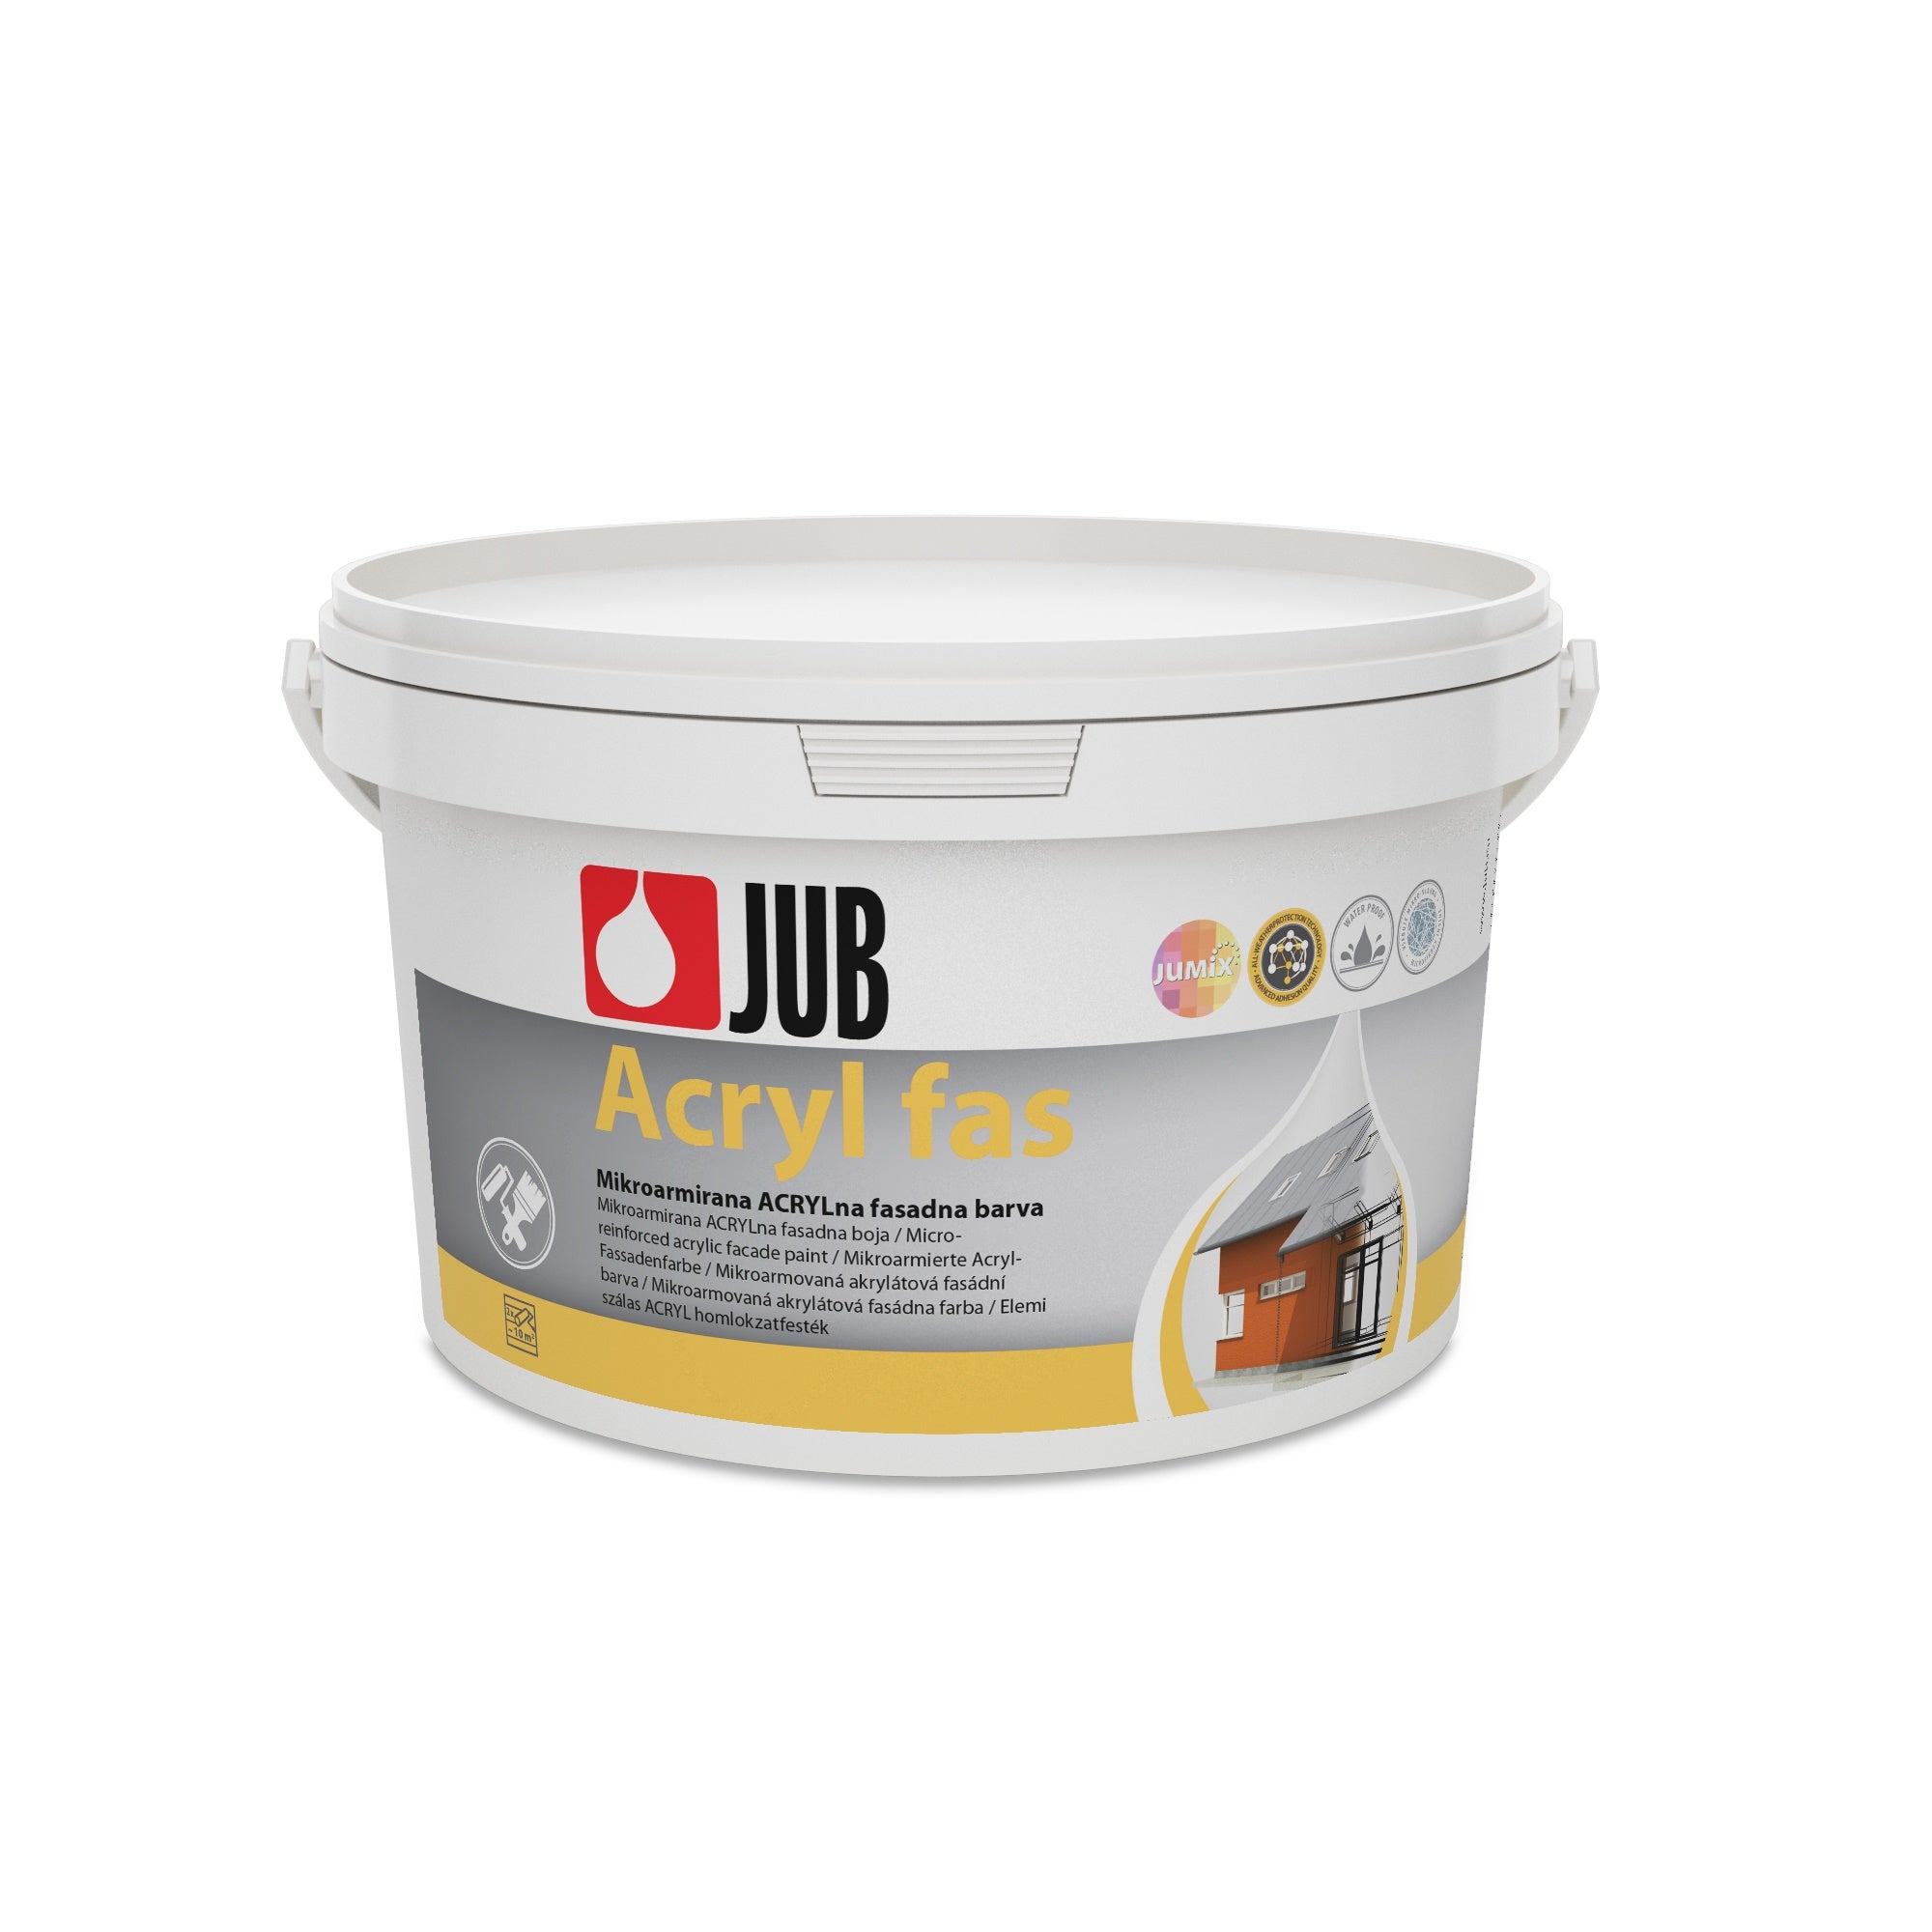 JUB Acryl fas mikroarmovaná akrylátová fasádní barva 2 l